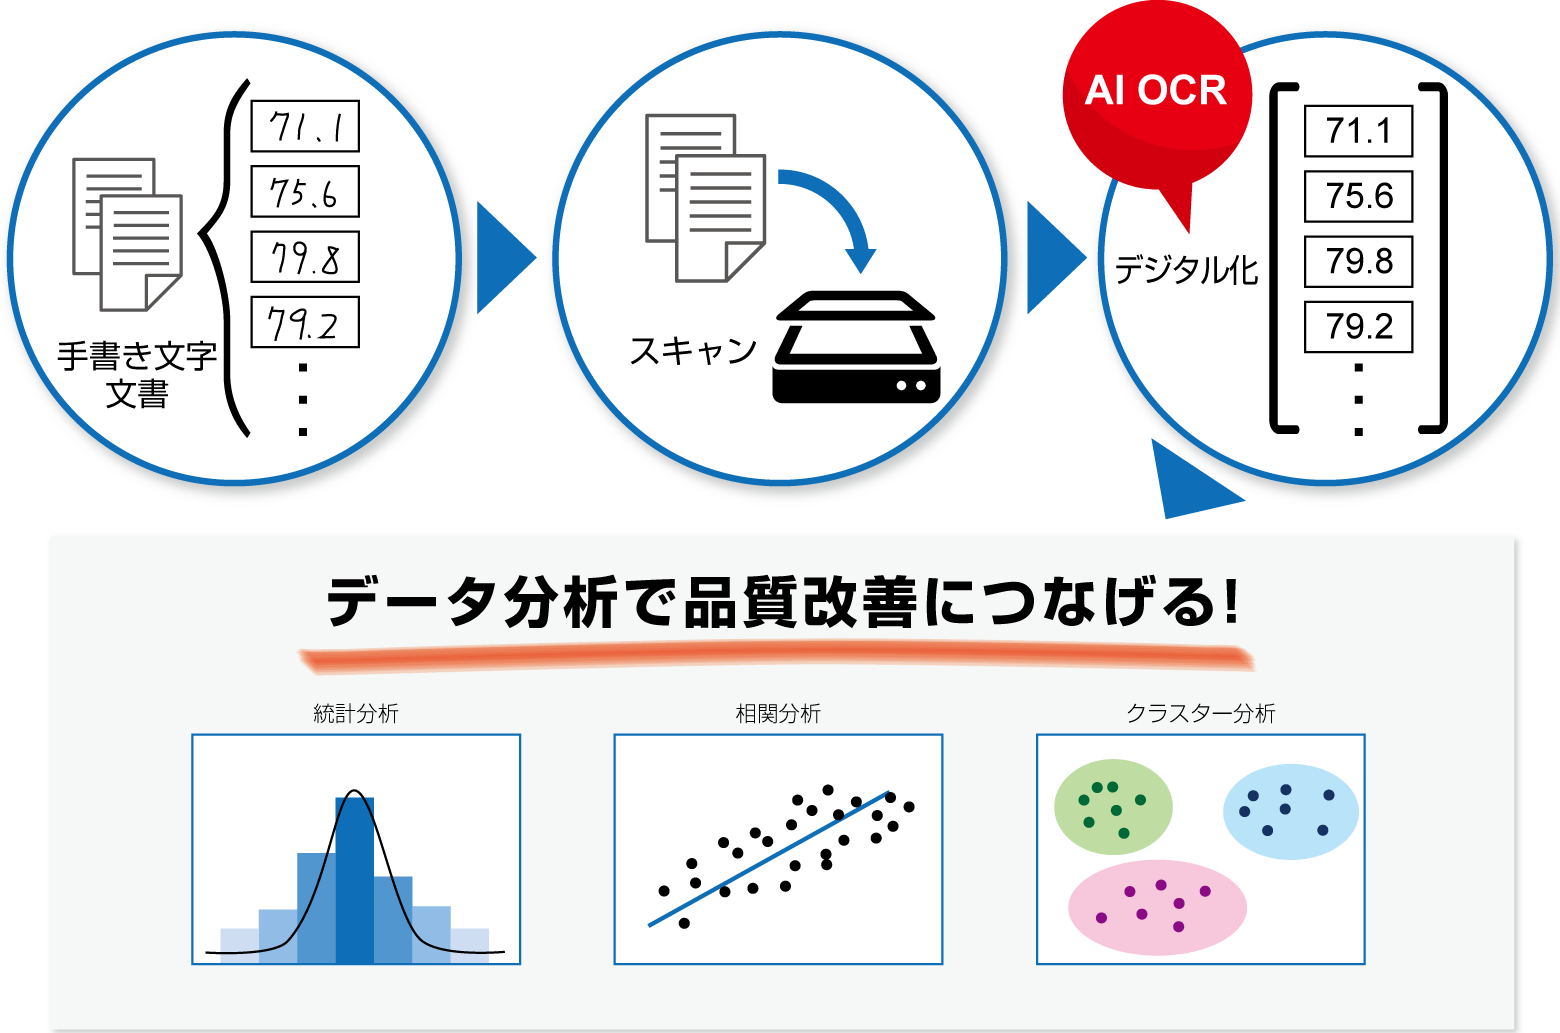 手書き文字のデータ分析の流れ: 手書き文字文書→スキャン→デジタル化 (AI-OCR) →データ分析で品質改善につなげる！